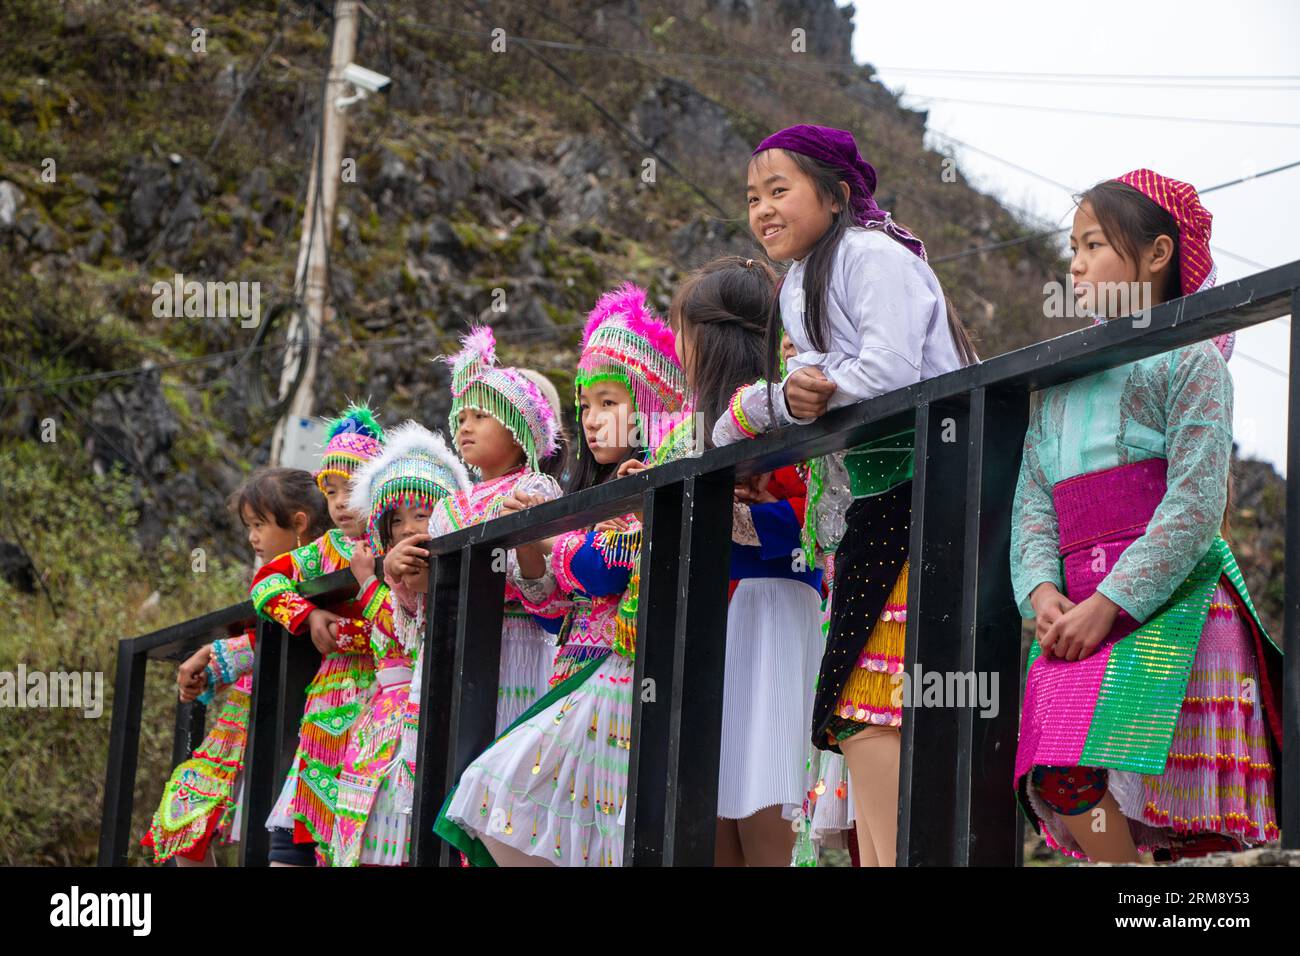 MÃ Pí Lèng, Vietnam - 28 gennaio 2020: Gruppo di ragazze Hmong con abiti tradizionali colorati per celebrare il Festival di Primavera lungo il percorso di ha Giang Foto Stock